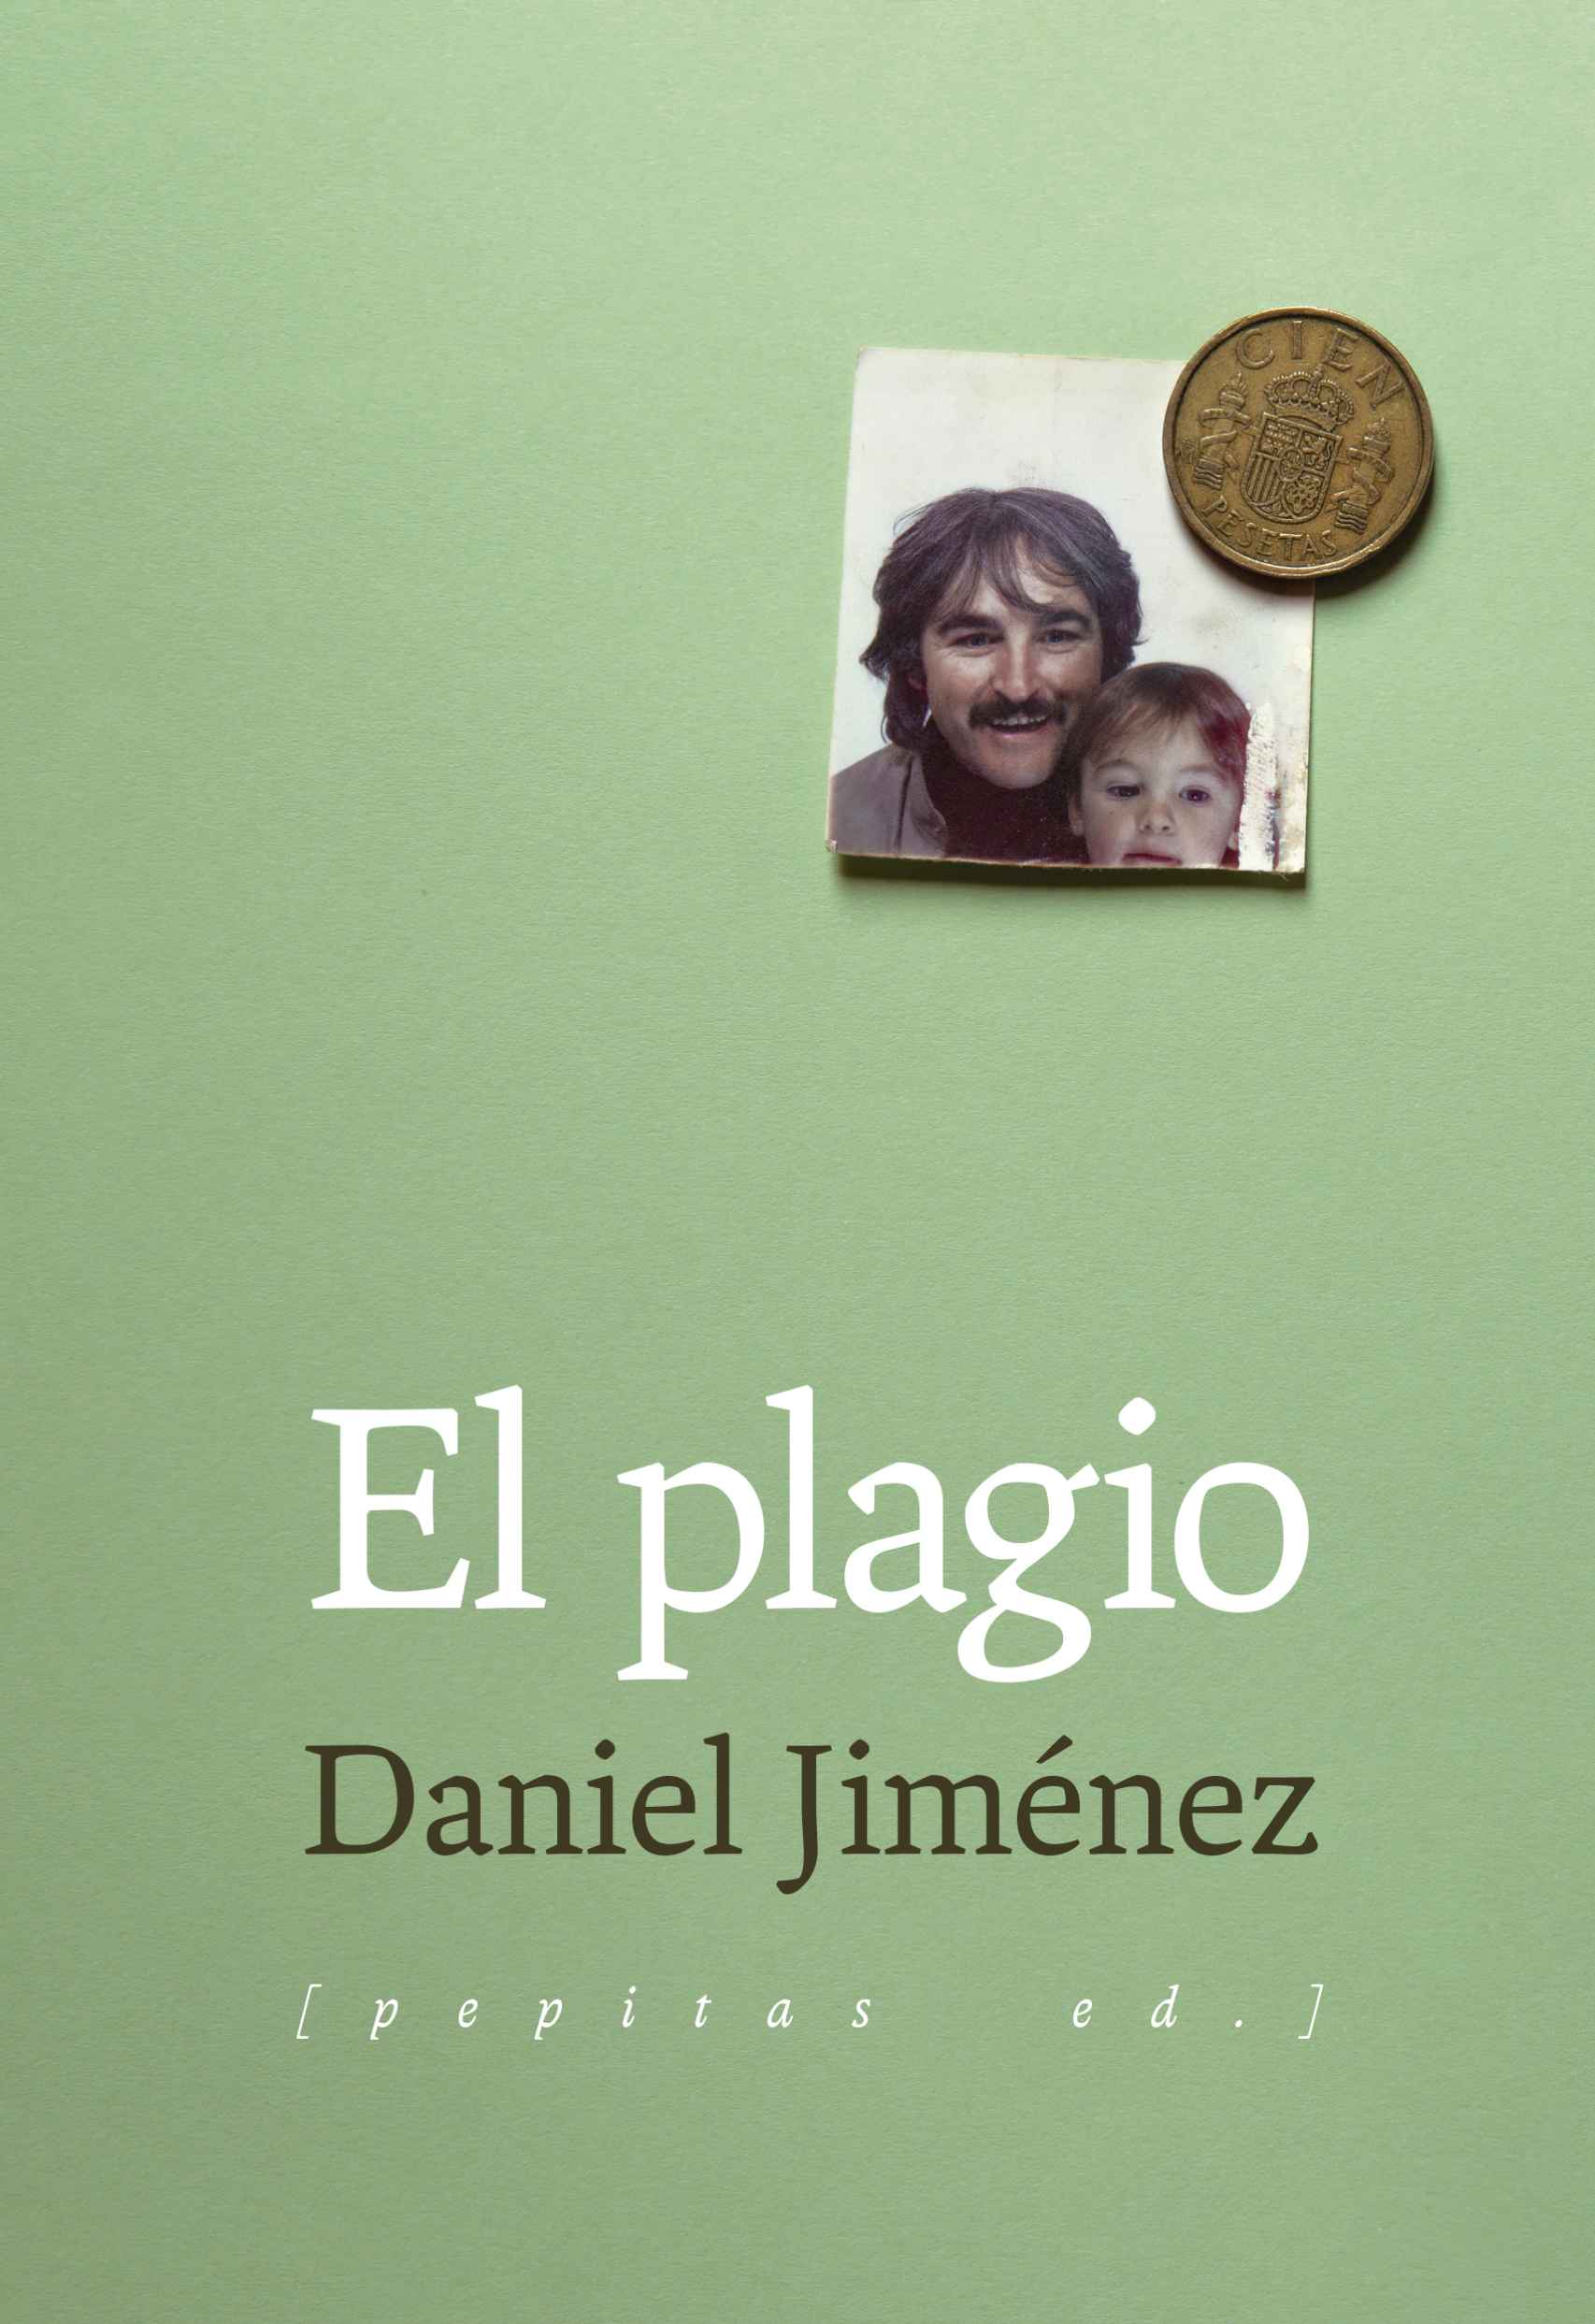 Portada de 'El Plagio', ilustrada con una fotografía del autor y su padre.